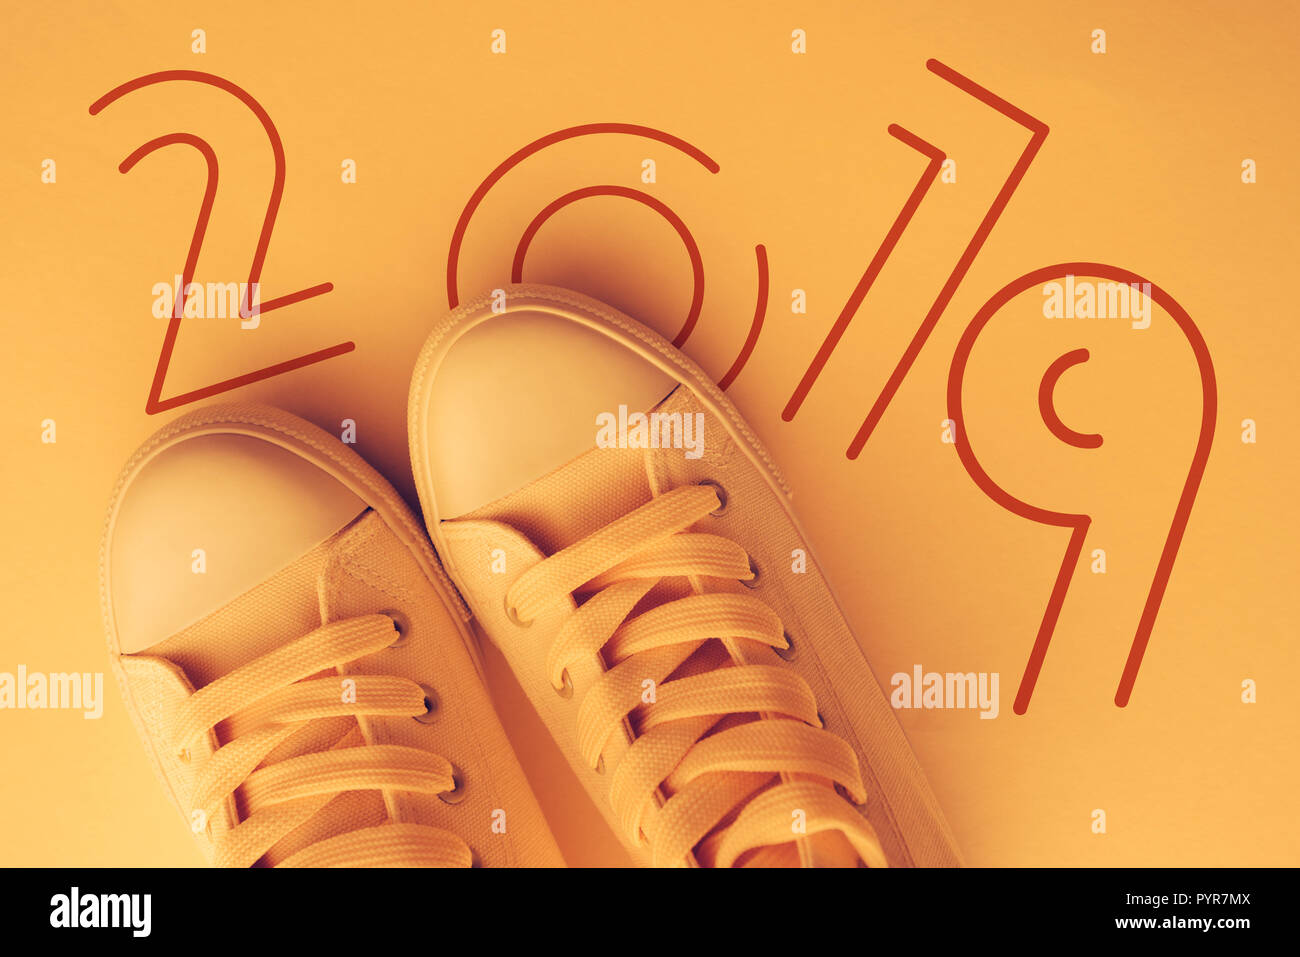 Felice anno nuovo 2019 a tutti i giovani, immagine concettuale con la gioventù moderna di stile sneakers dal di sopra Foto Stock